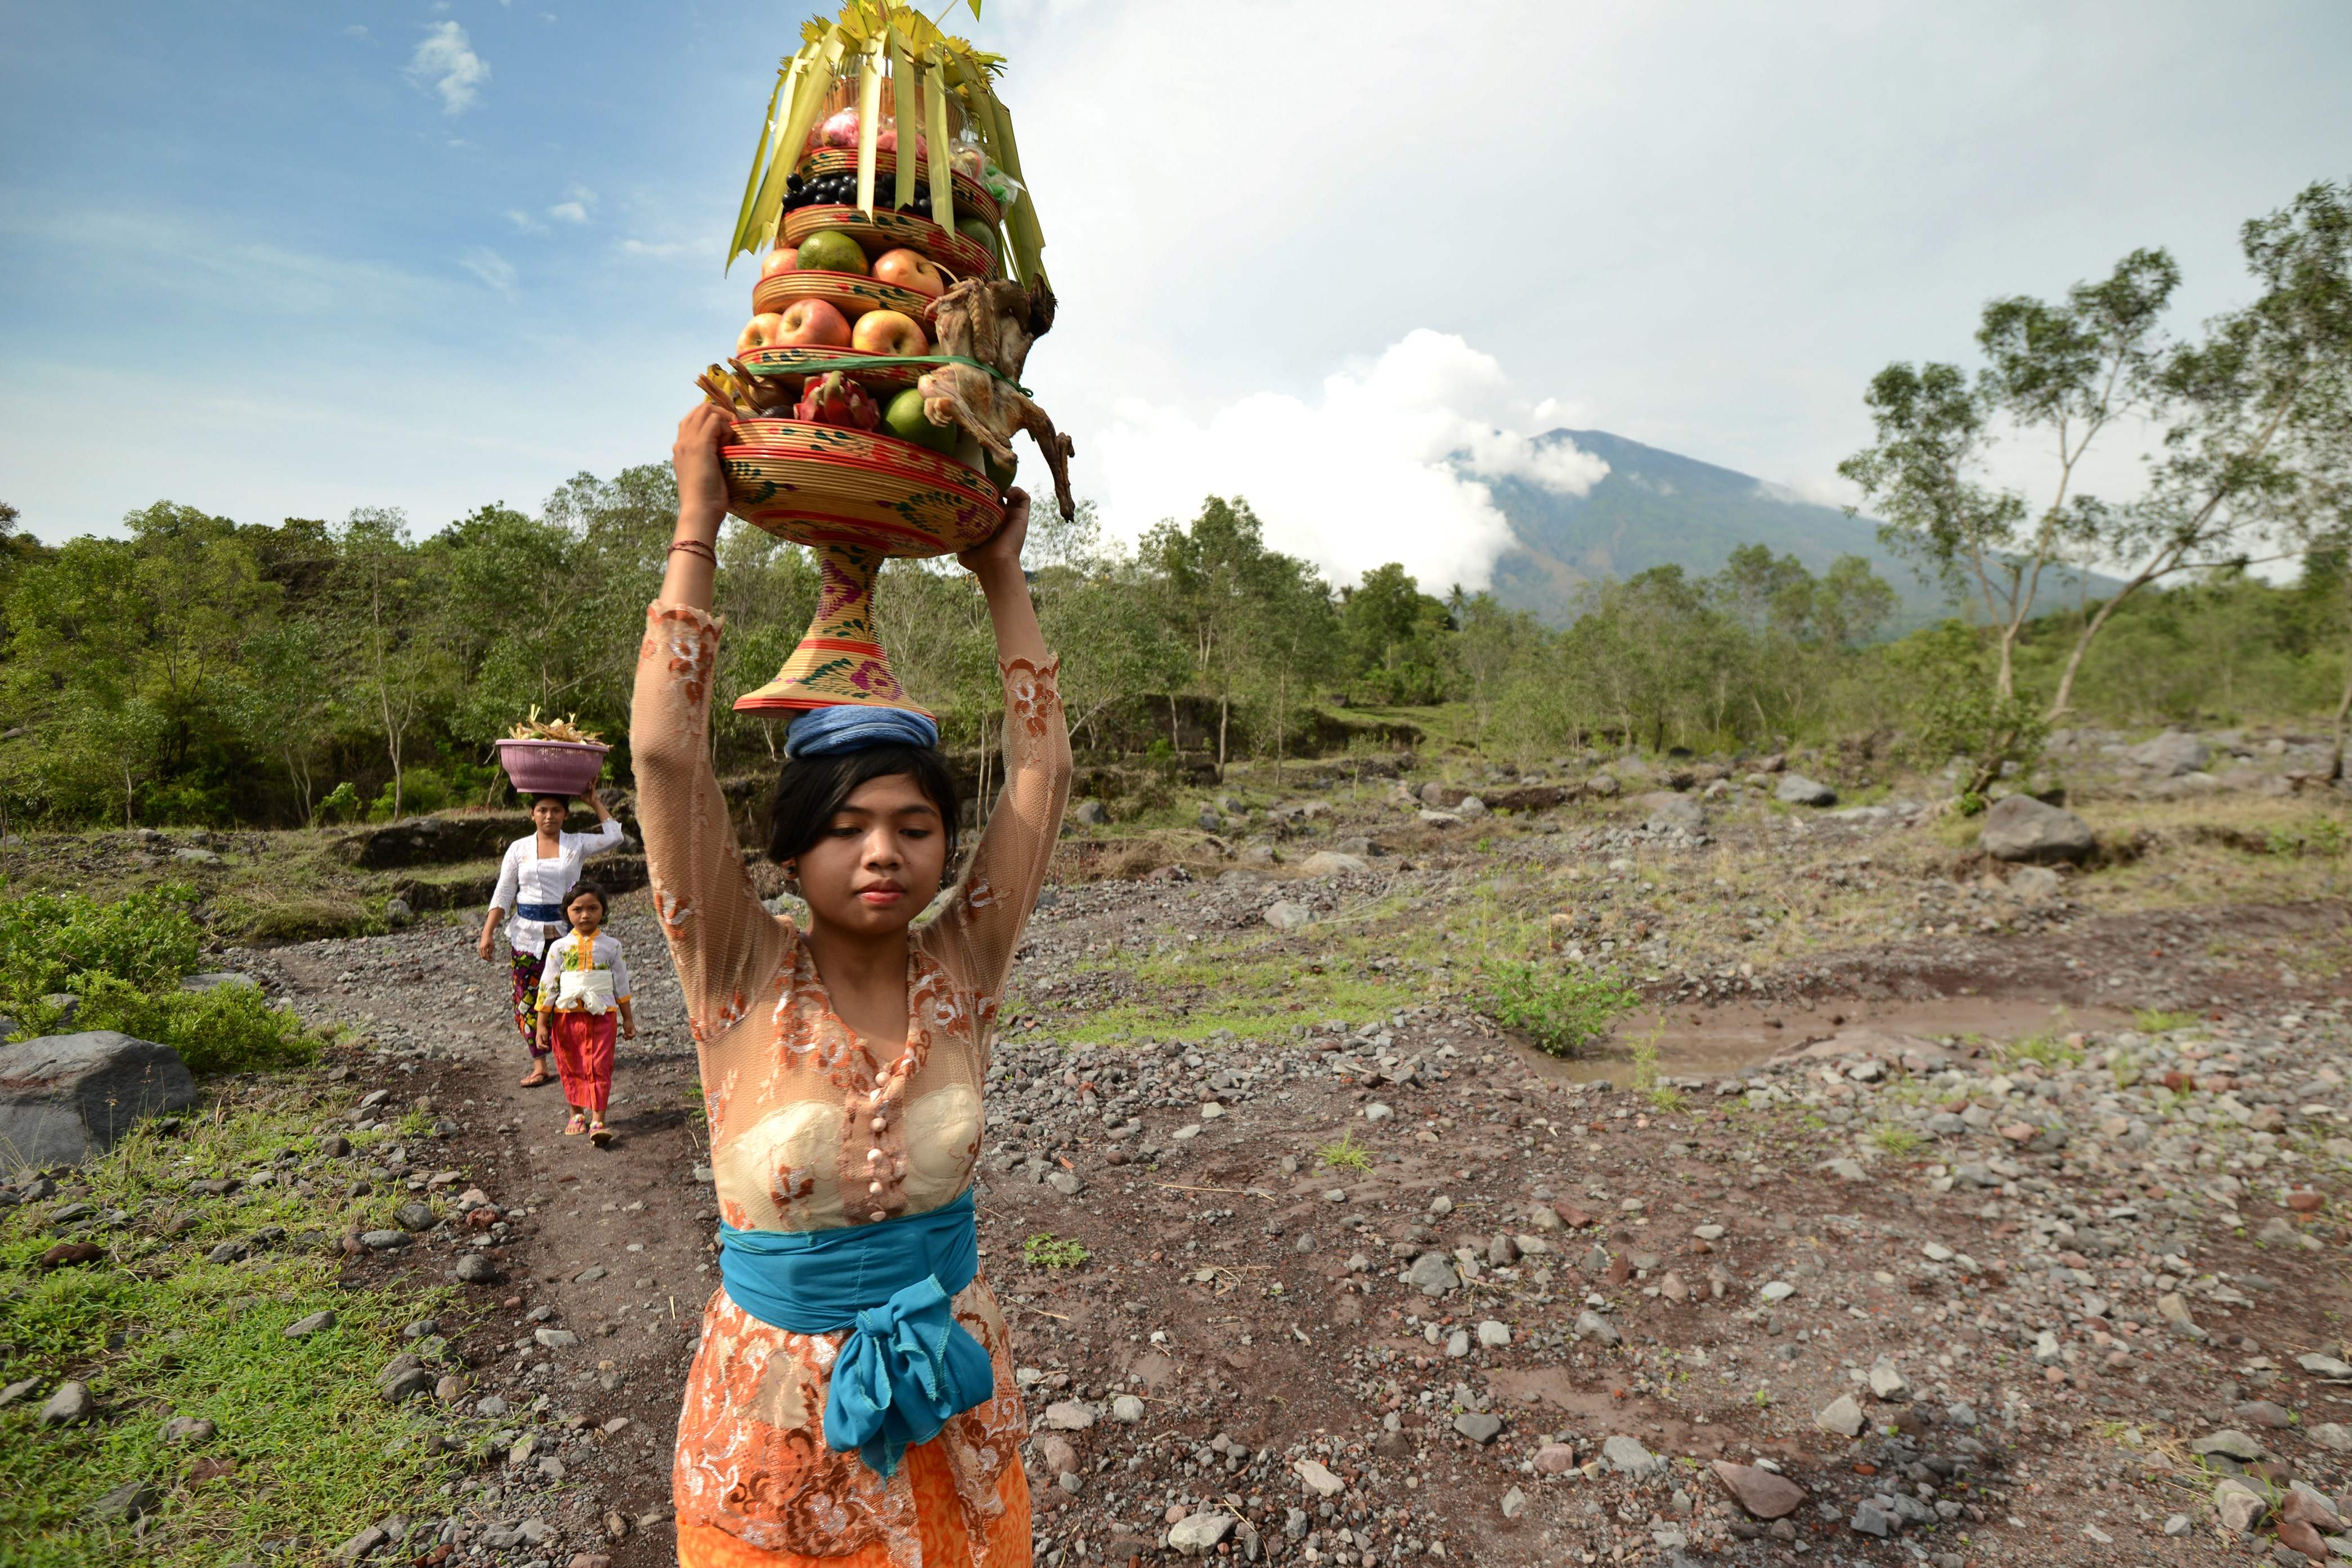 قبائل الهندوس فى إندونيسيا تحمل قرابين أثناء توجهها للمعابد